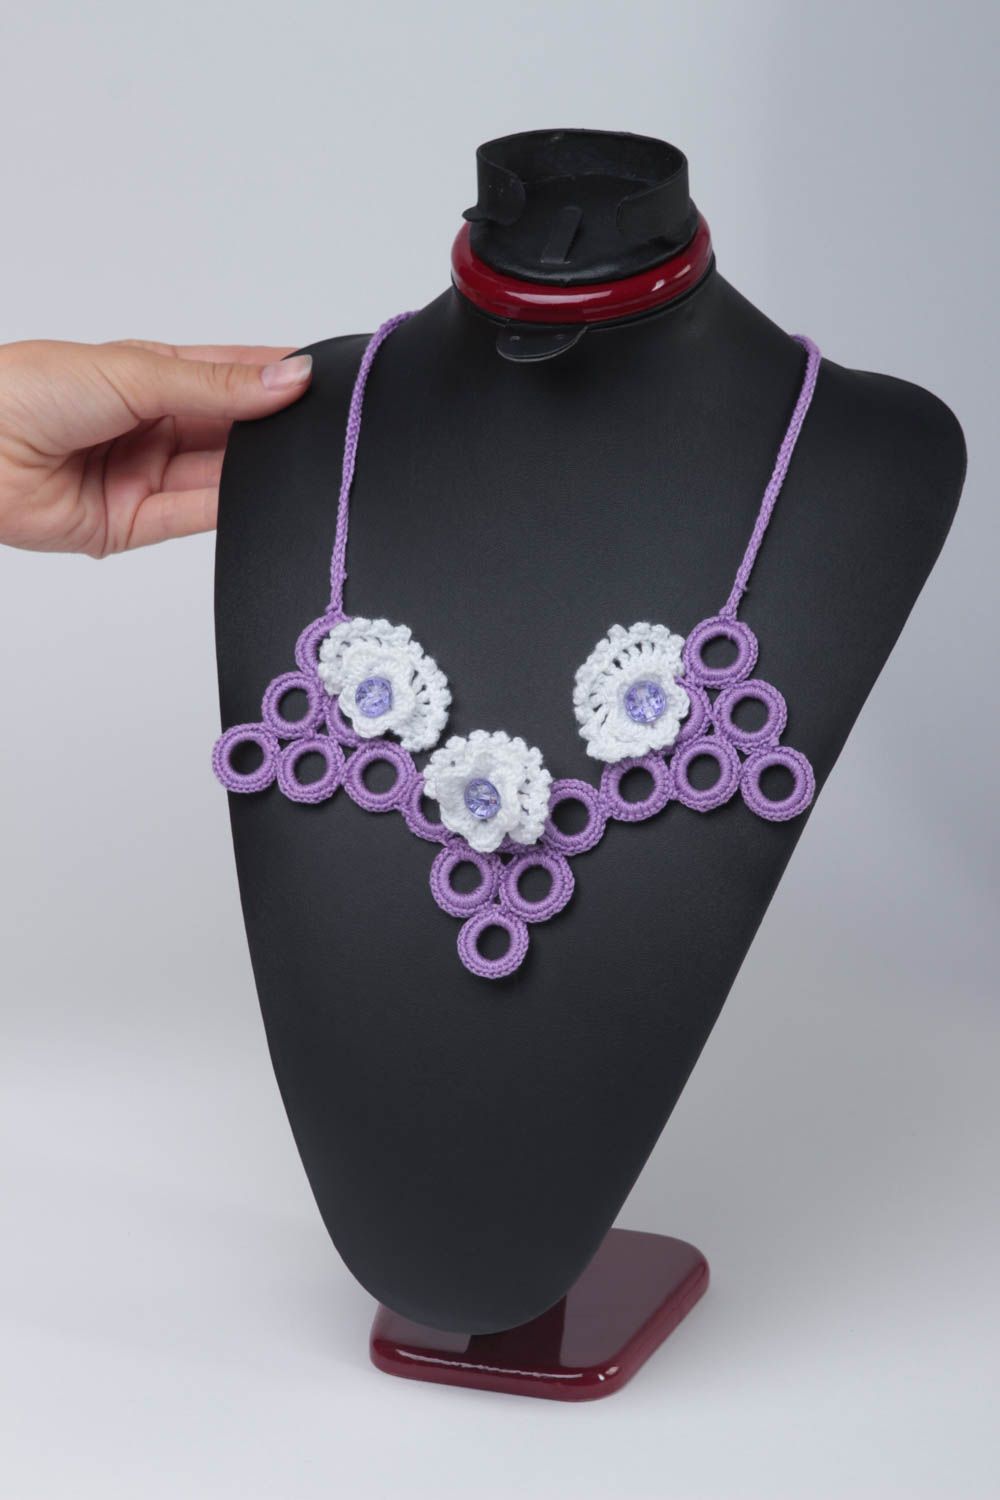 Stylish neck jewelry female handmade necklace textile unusual necklace photo 2